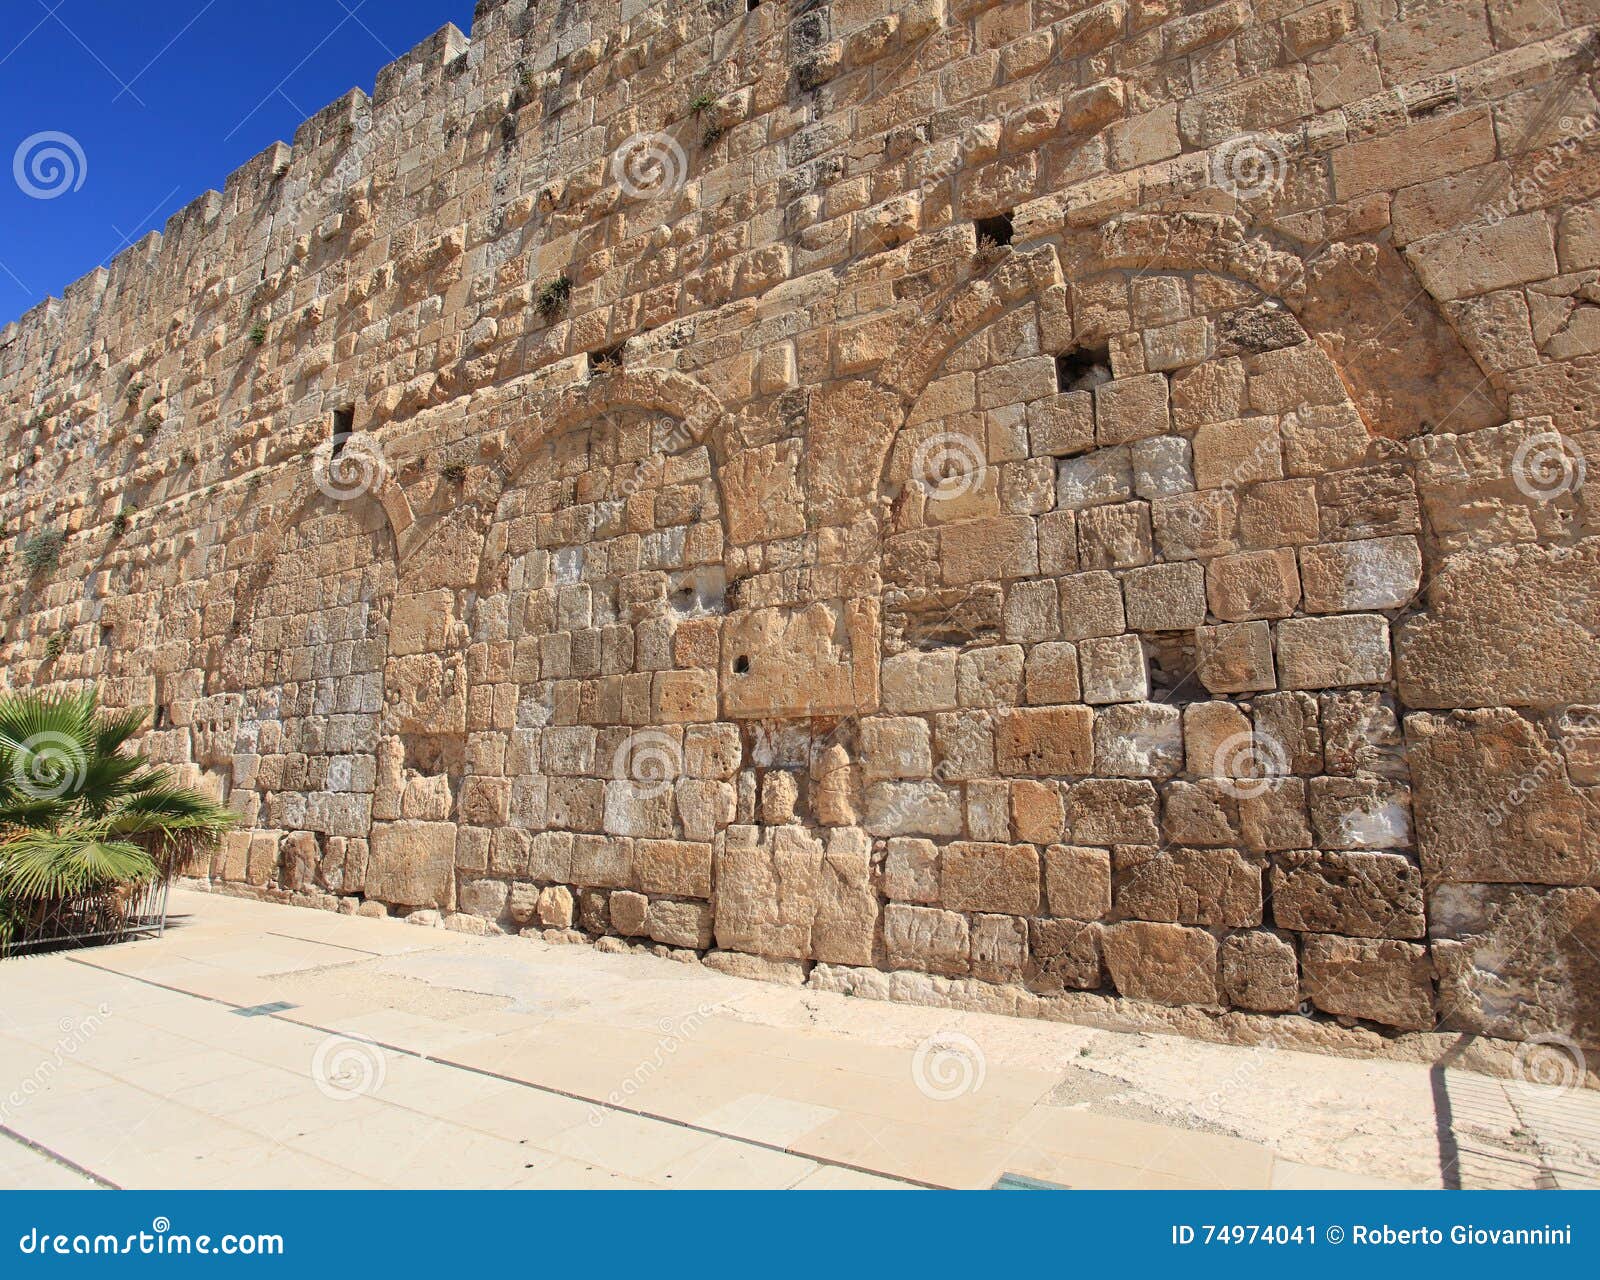 hulda gates jerusalem archaeological park